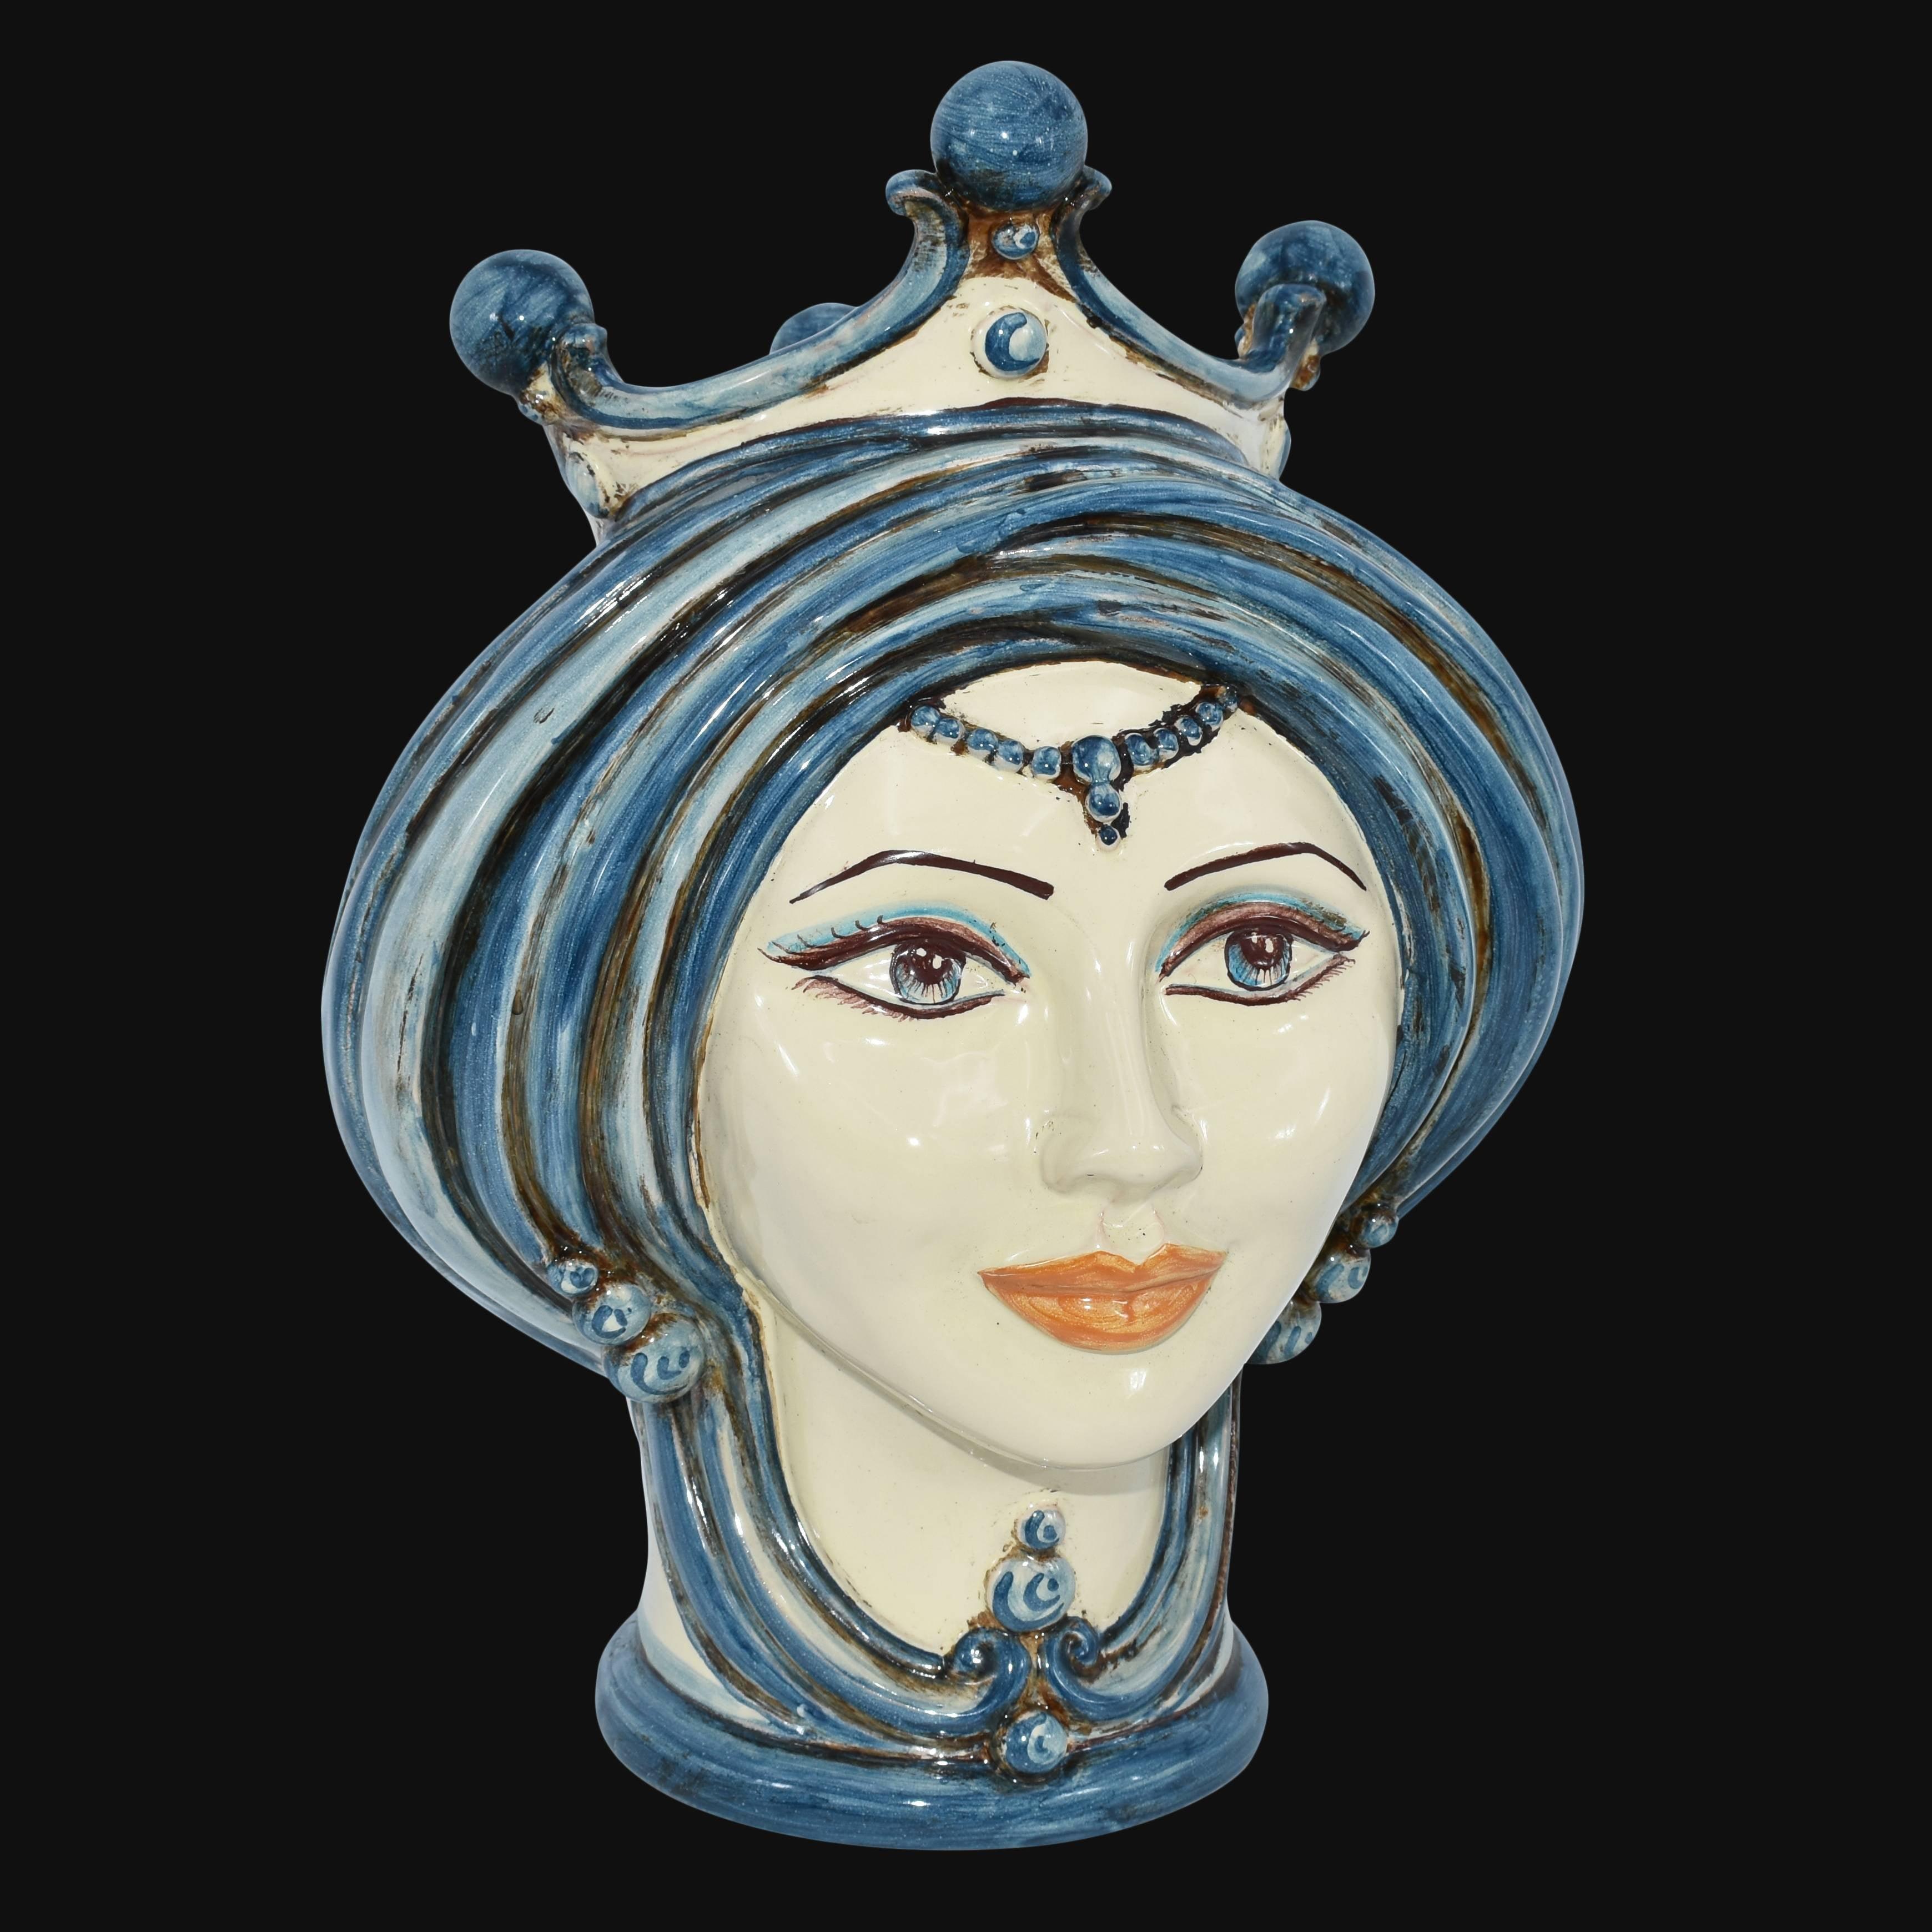 Testa h 30 in mono blu donna - Ceramiche di Caltagirone Sofia